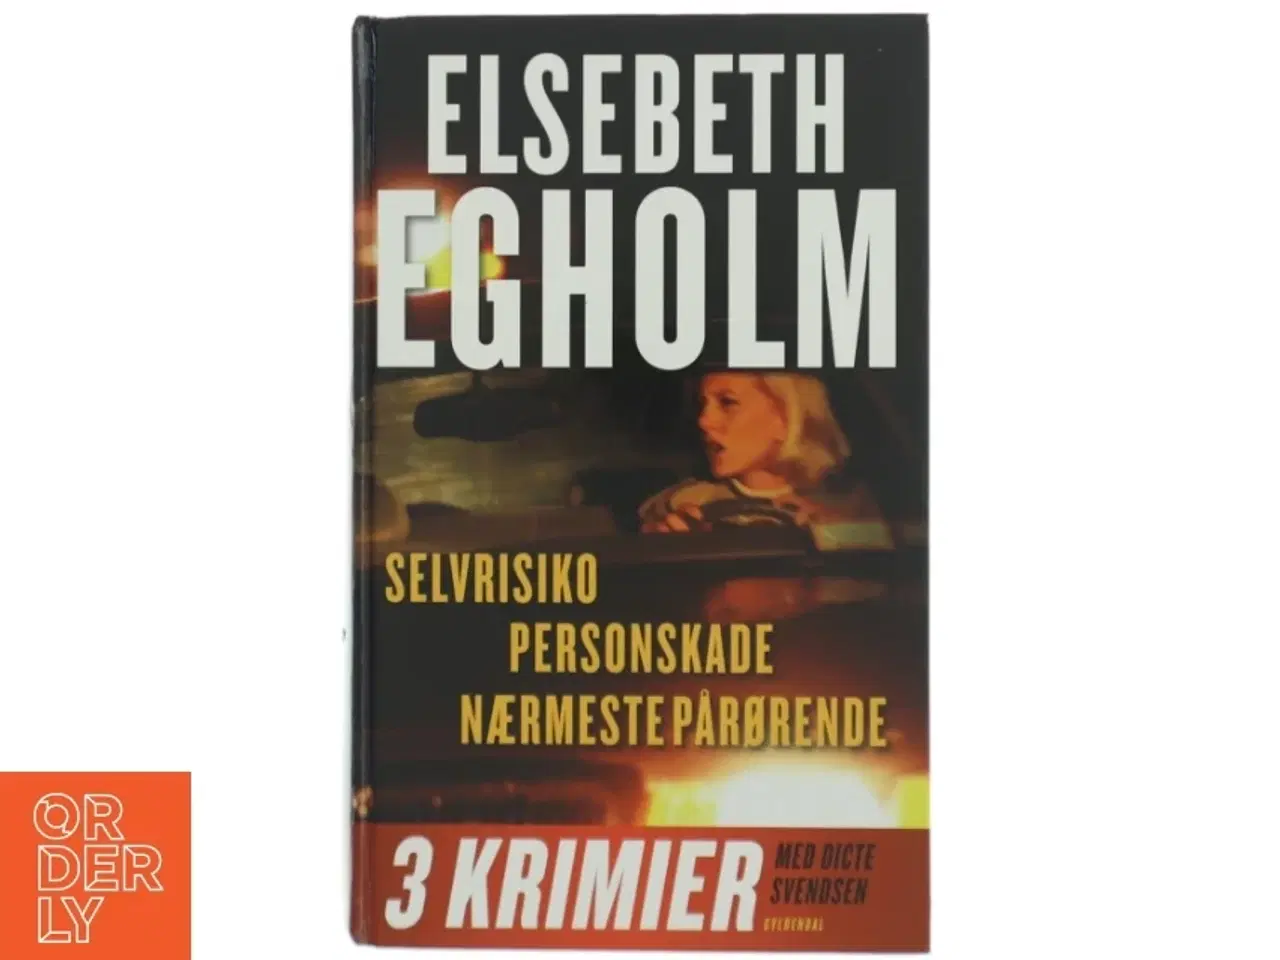 Billede 1 - Selvrisiko - Personskade - Nærmeste pårørende - 3 krinier af Elsebeth Egholm (Bog)